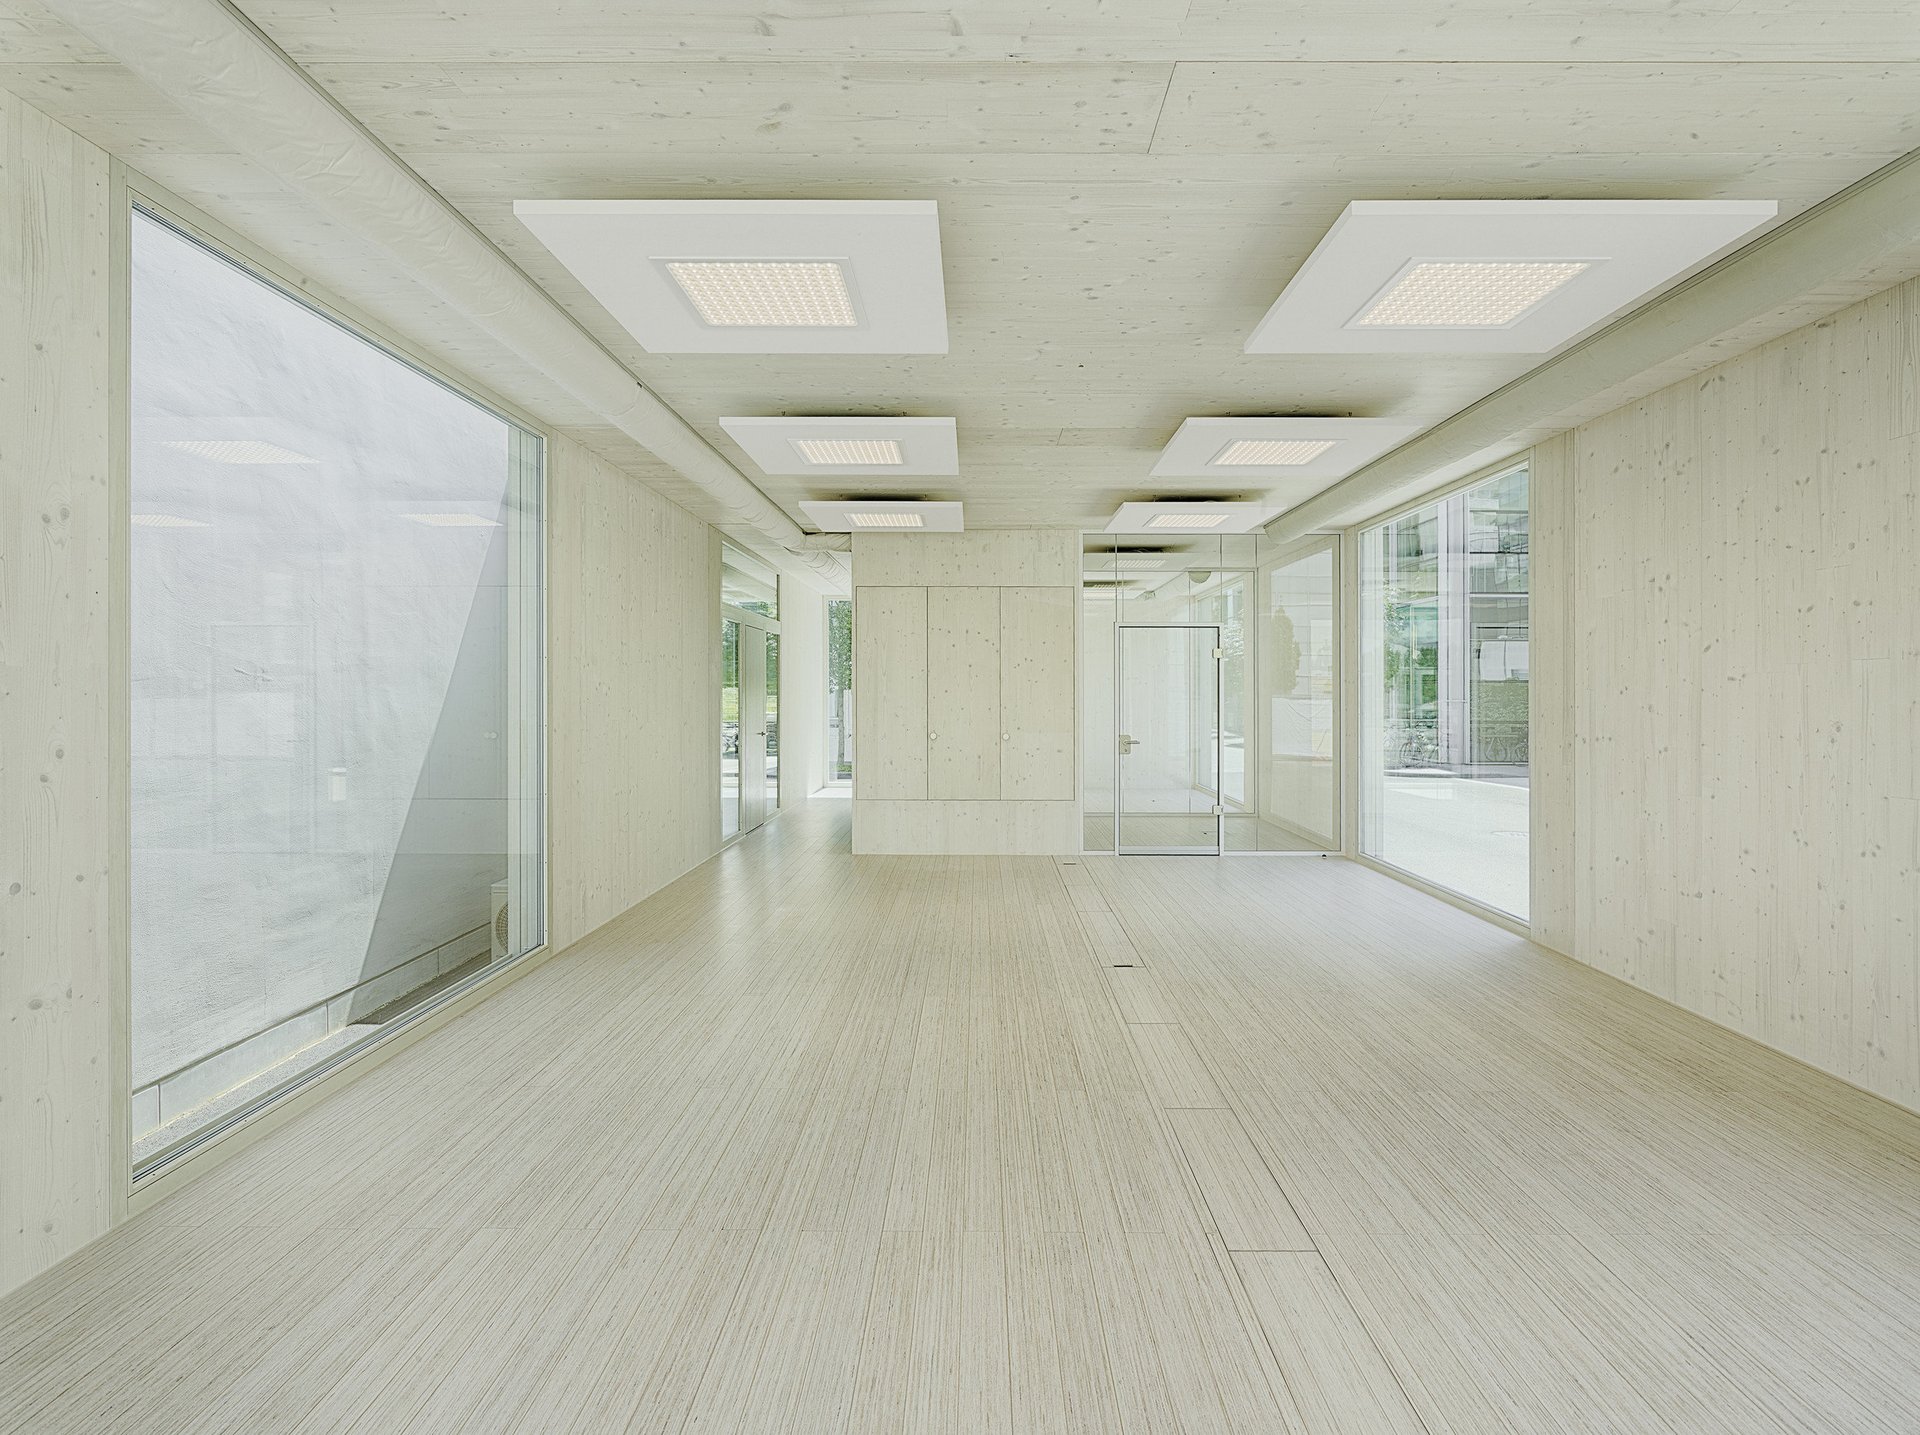 Leerer Raum aus sichtbarem Massivholz und beidseitig festverglasten raumhohen Fenster